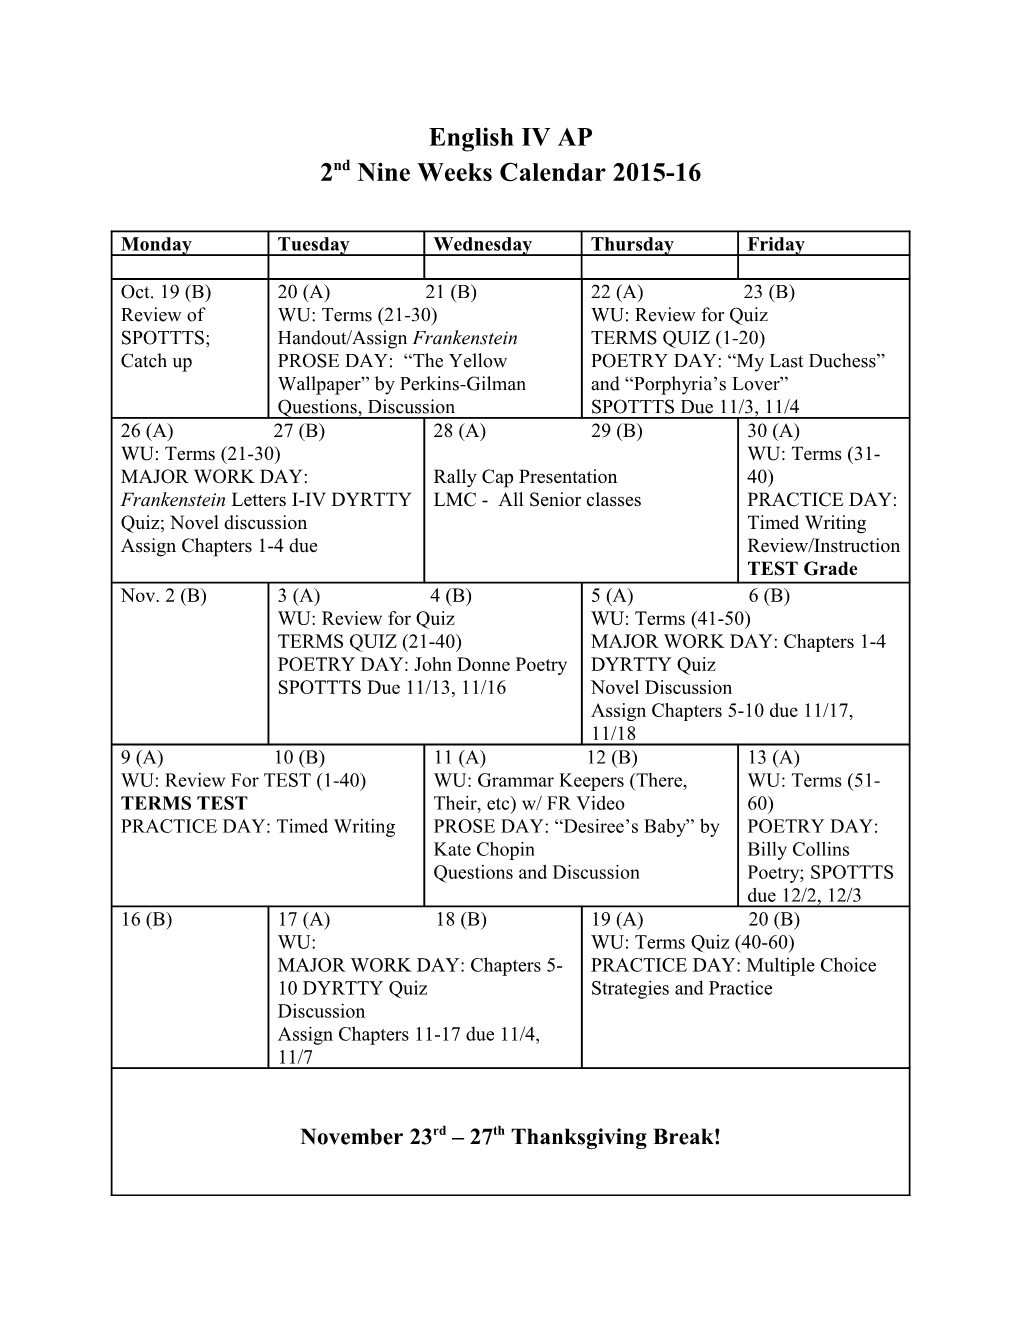 2Nd Nine Weeks Calendar 2015-16